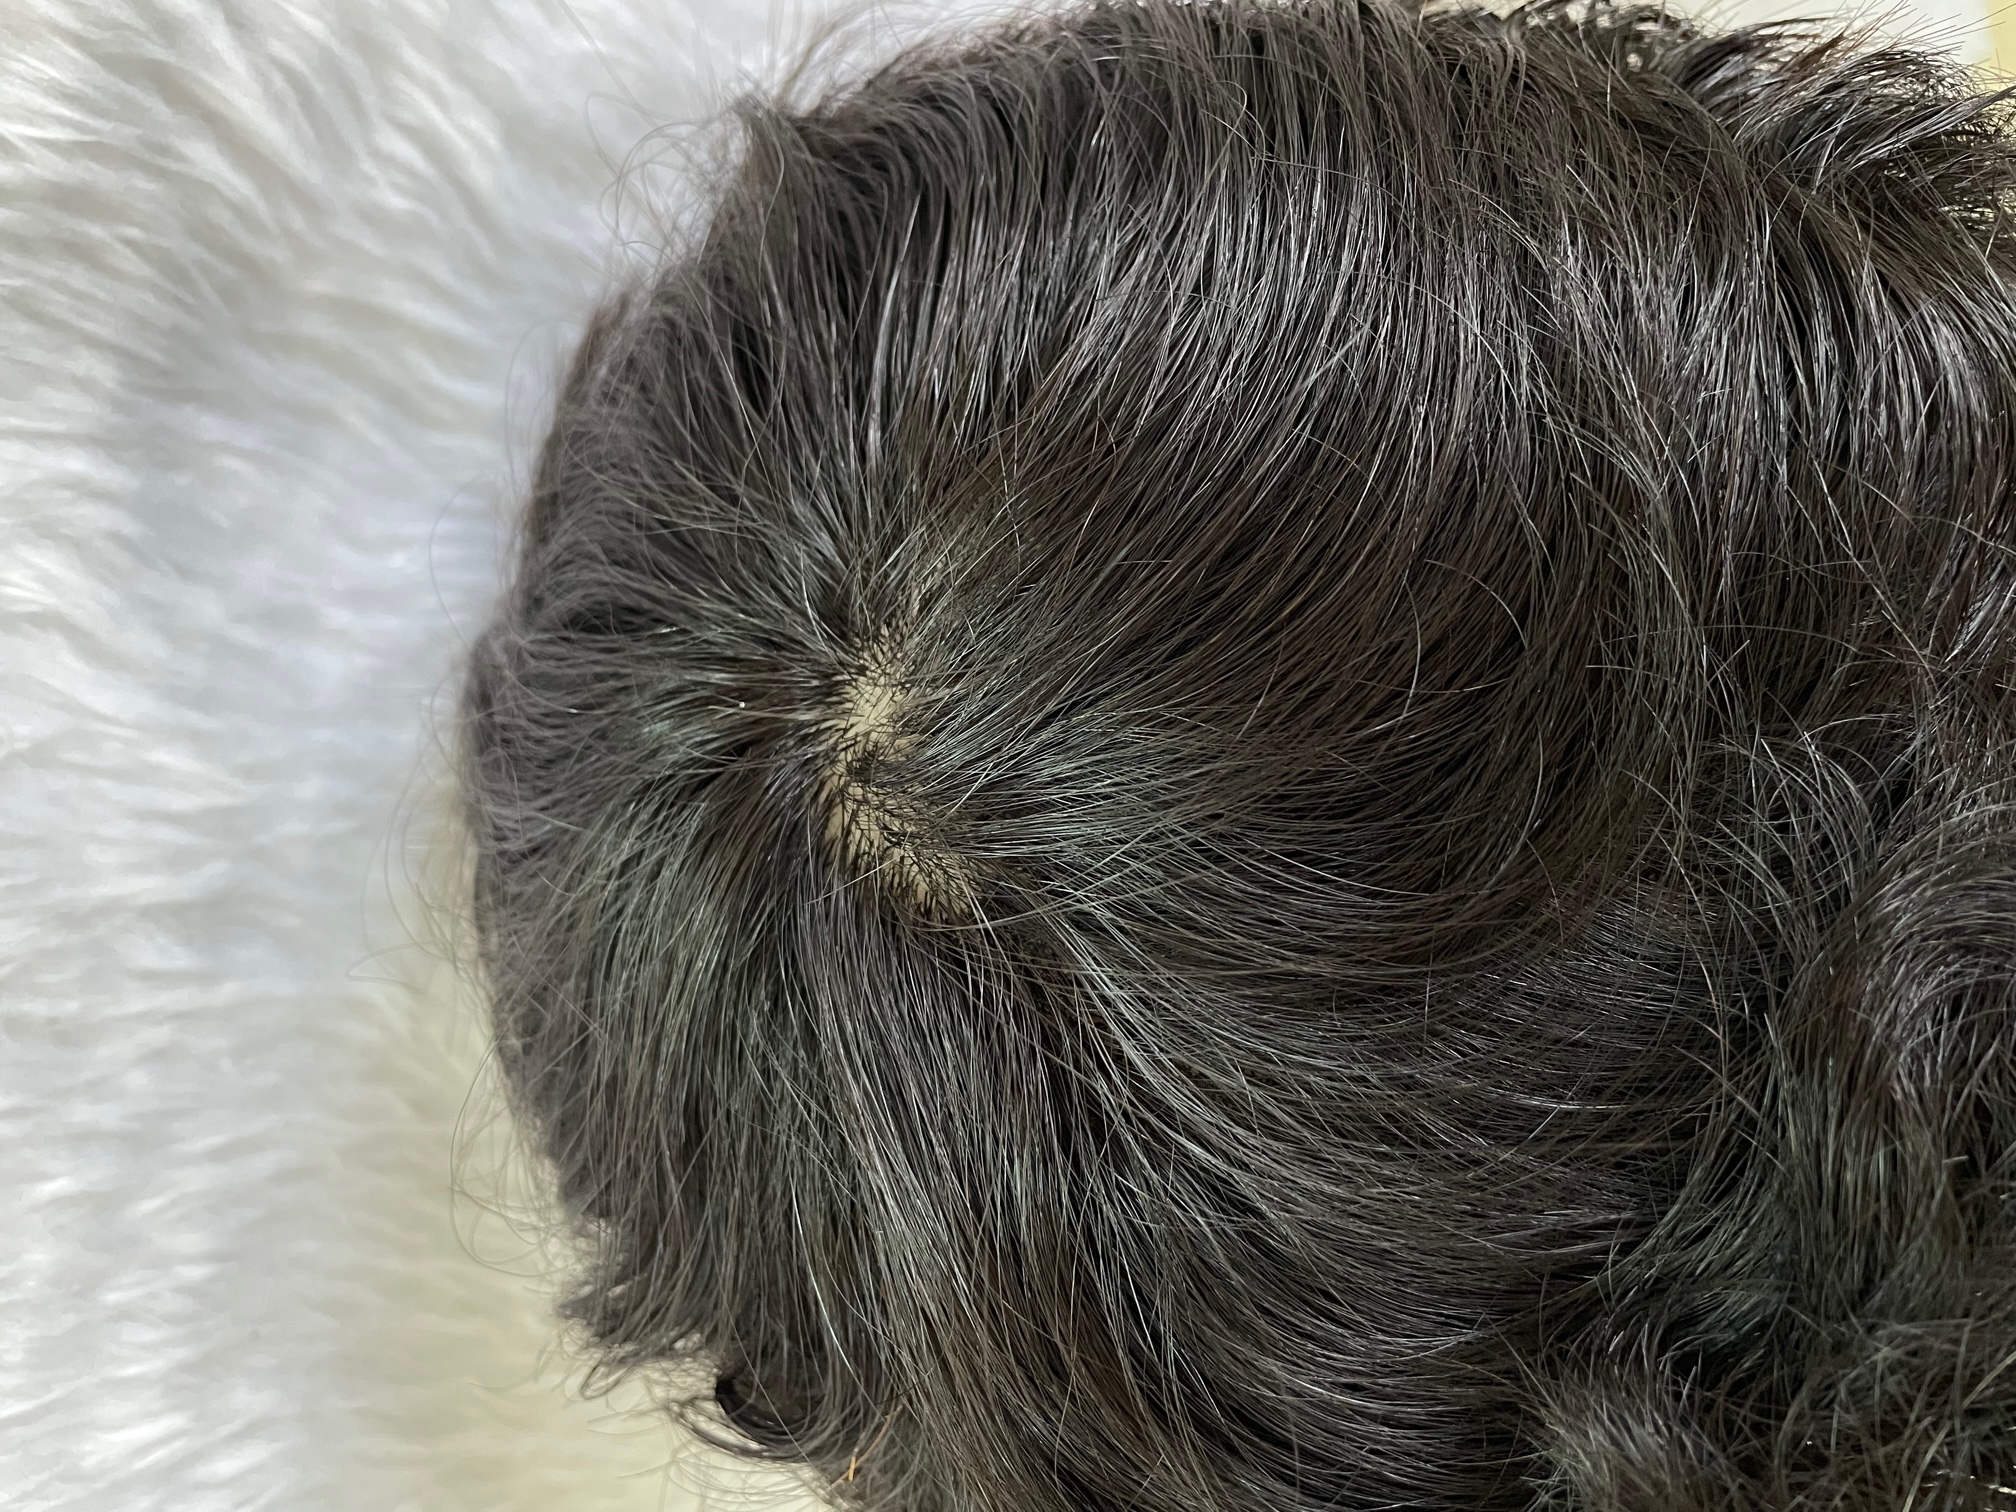 باروكة ميشا 6 انش جذور دانتيل أمامية 100% شعر طبيعي برازيلي المصدر .